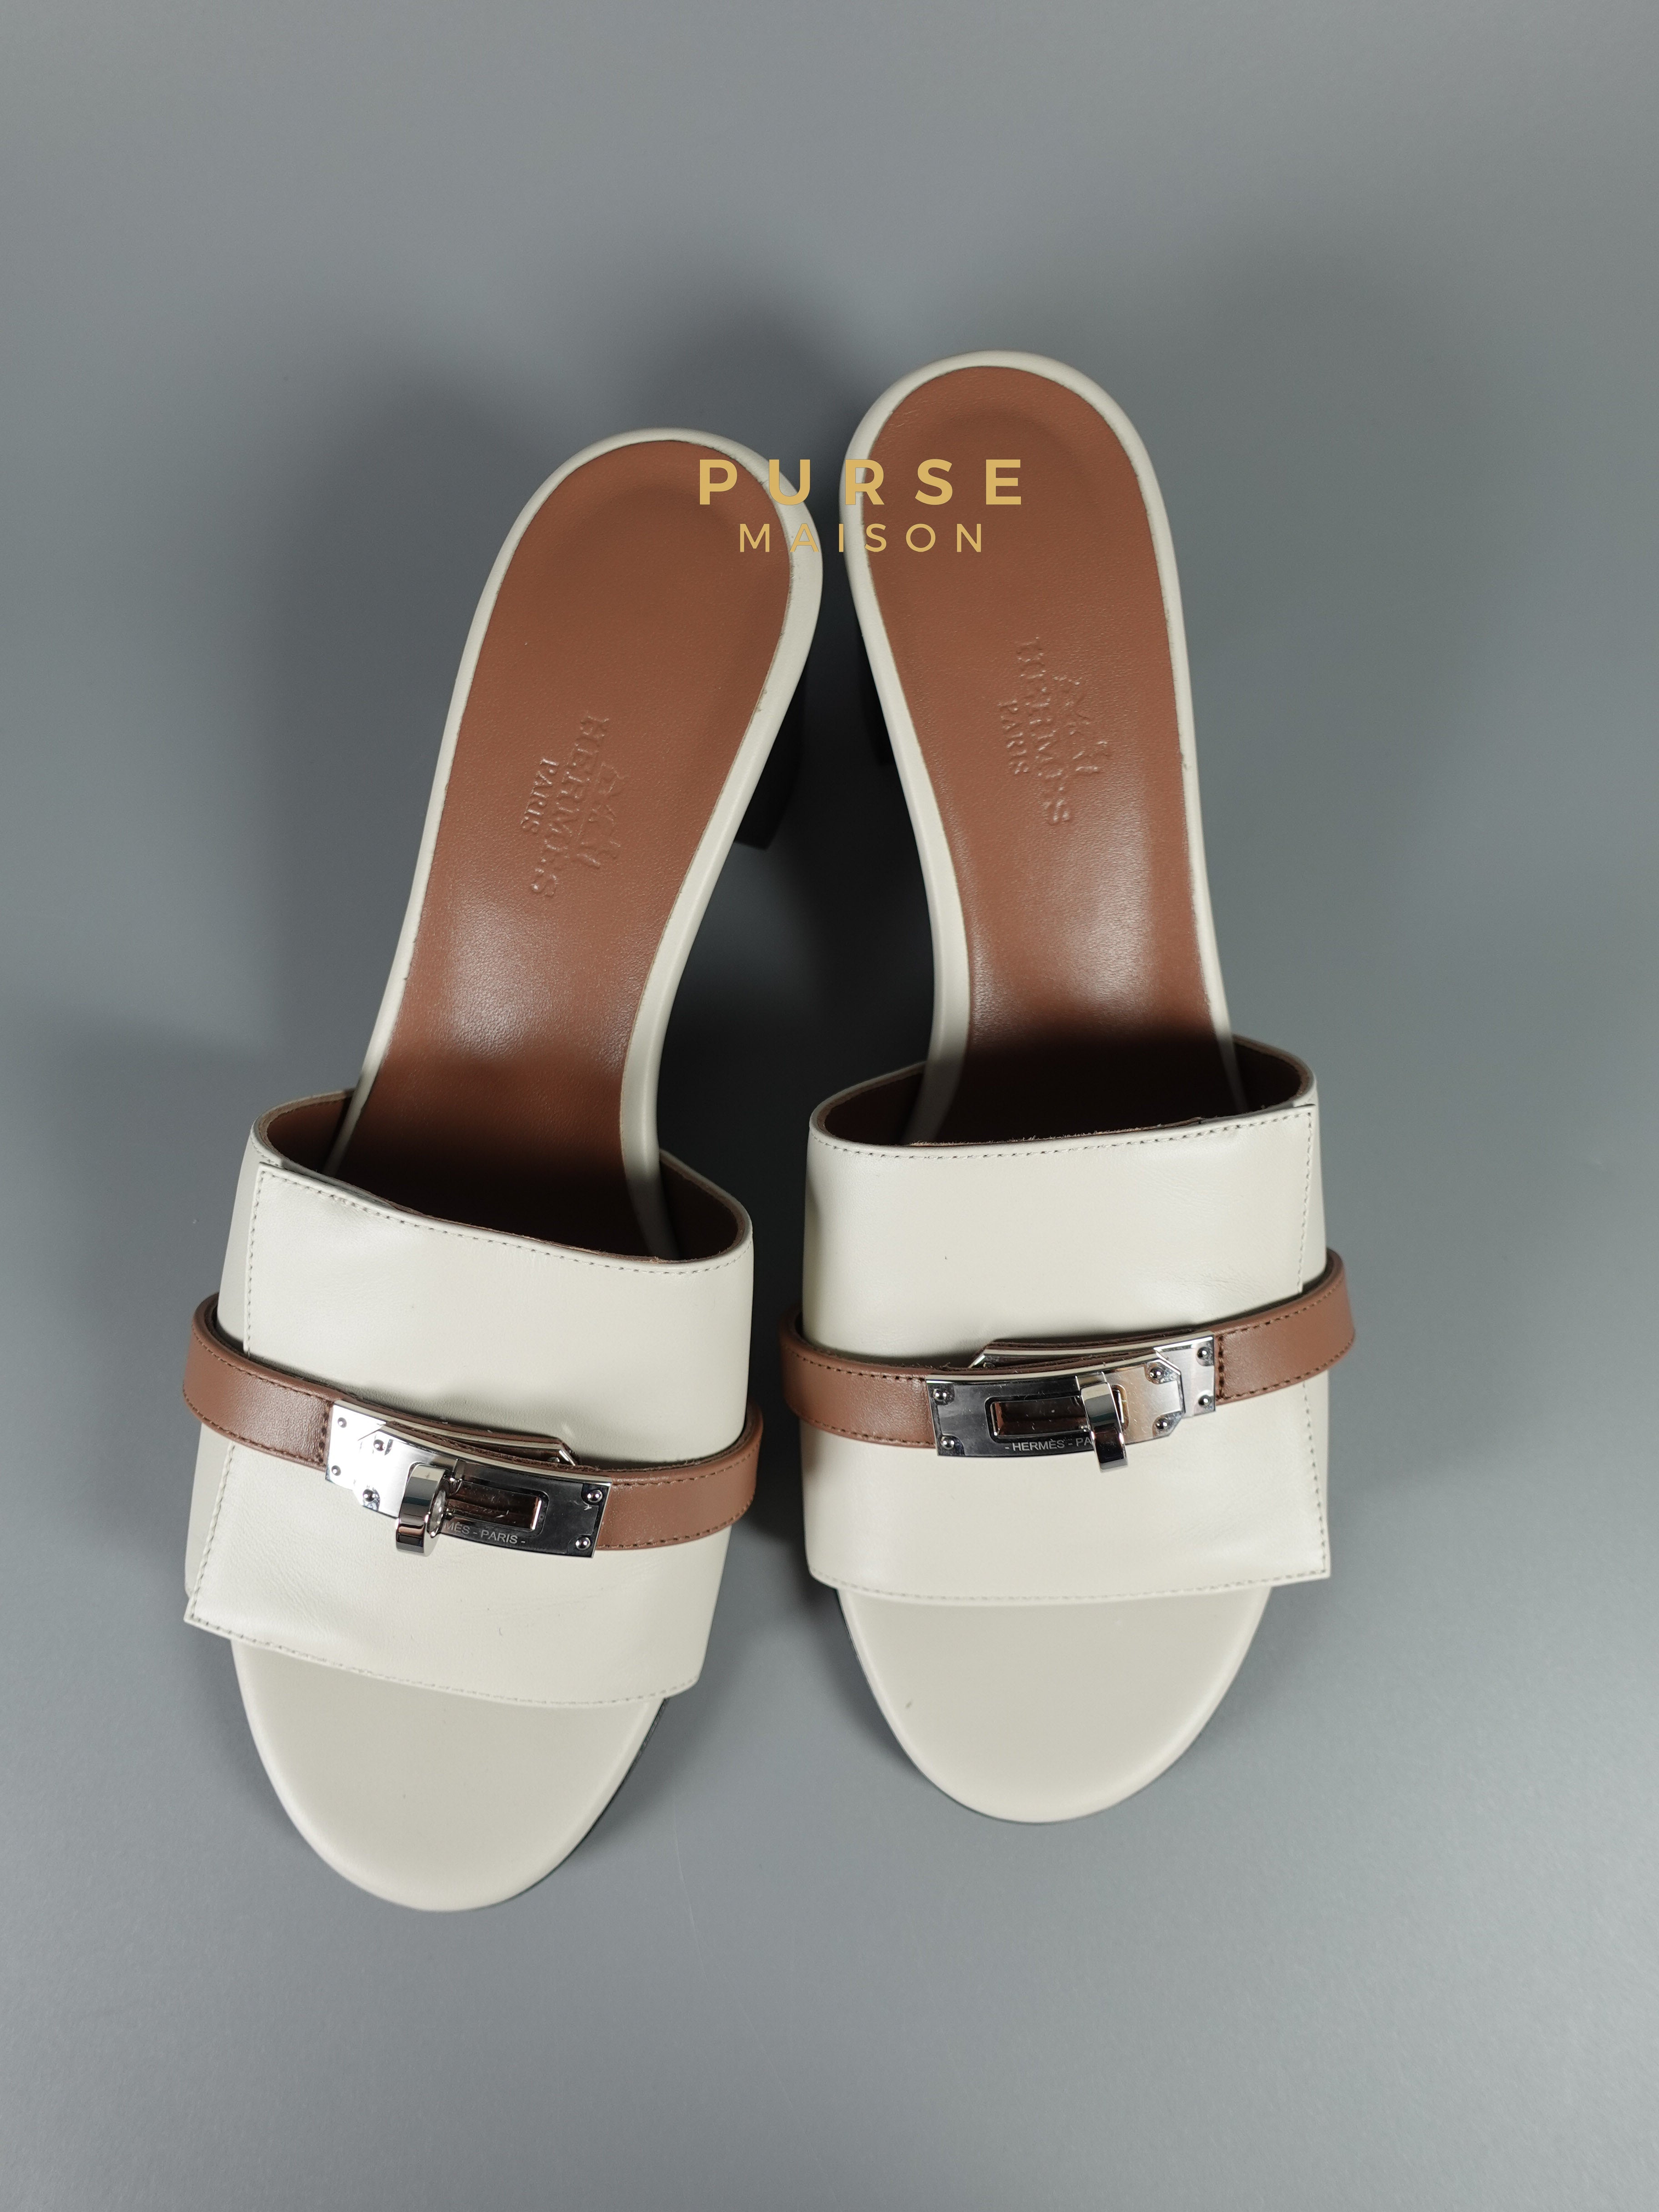 Hermes Gigi 50 Beige Glaise/ Rose Perle Sandals Size 37 EU (24cm) | Purse Maison Luxury Bags Shop